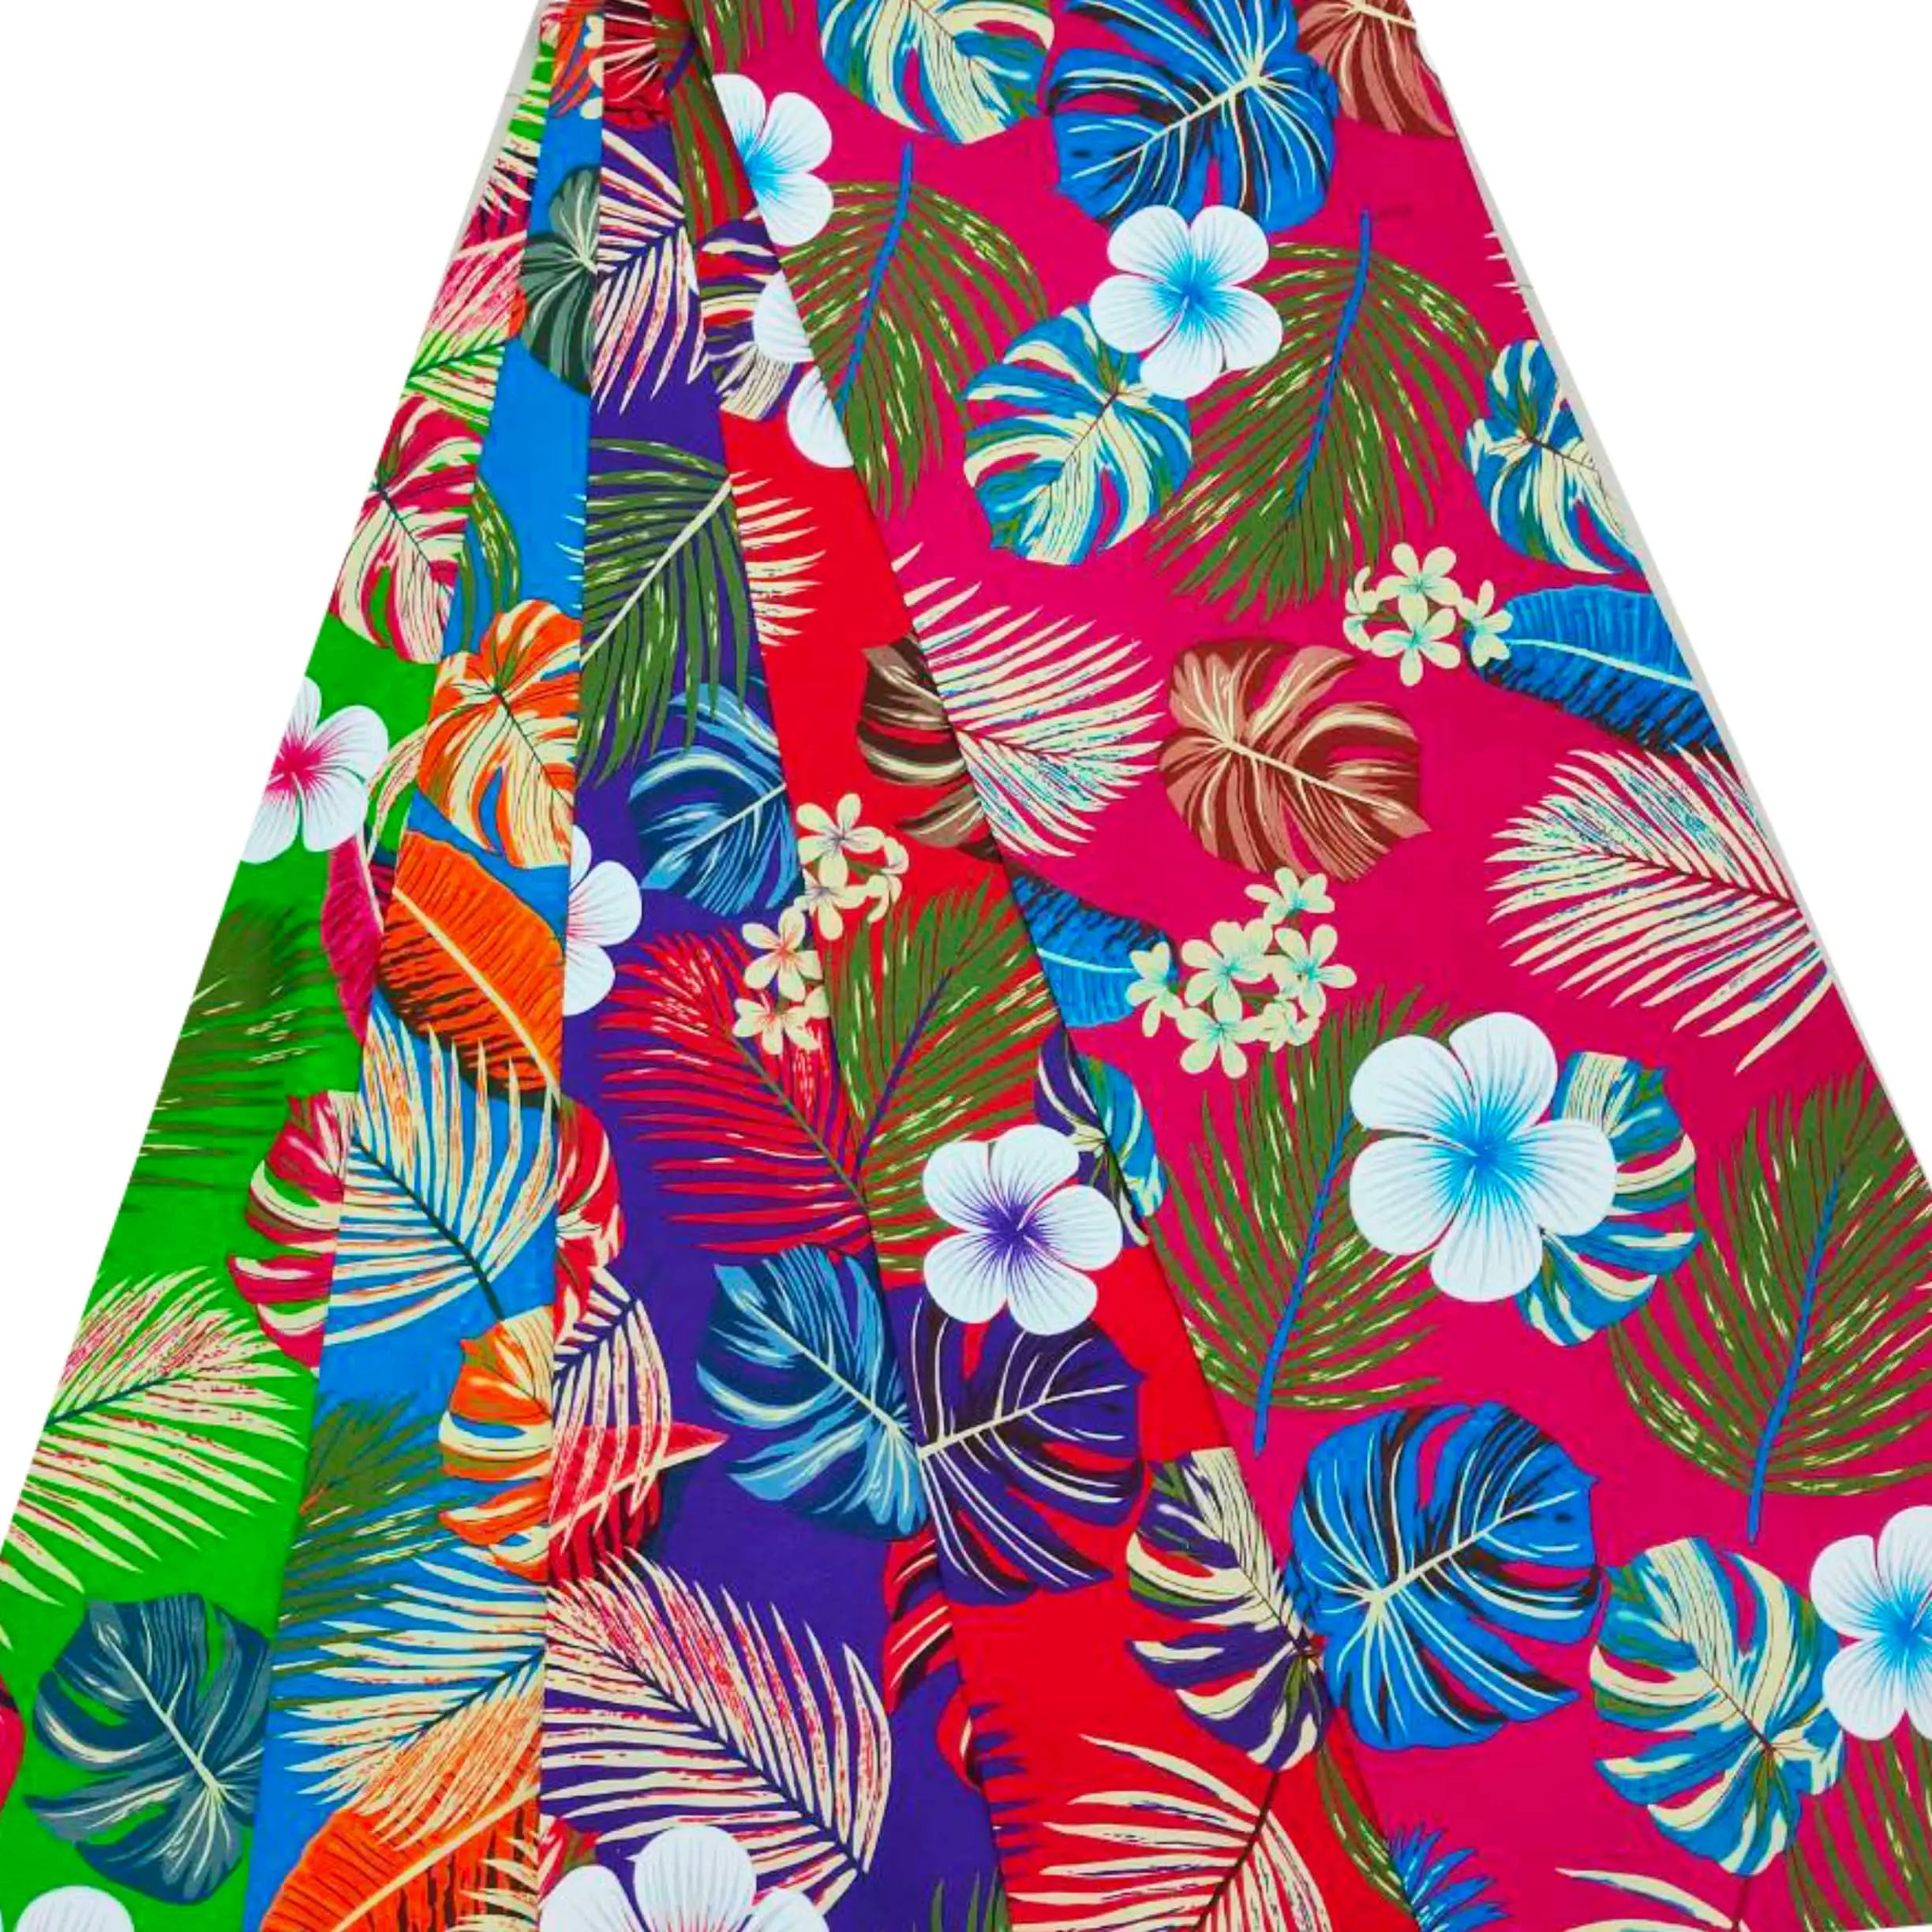 Hot Sale Sommer Lava Lava Blume Blumen gedruckt Pareo Strand kleid 100% Rayon Sarong Vertuschen Bikini Bade bekleidung